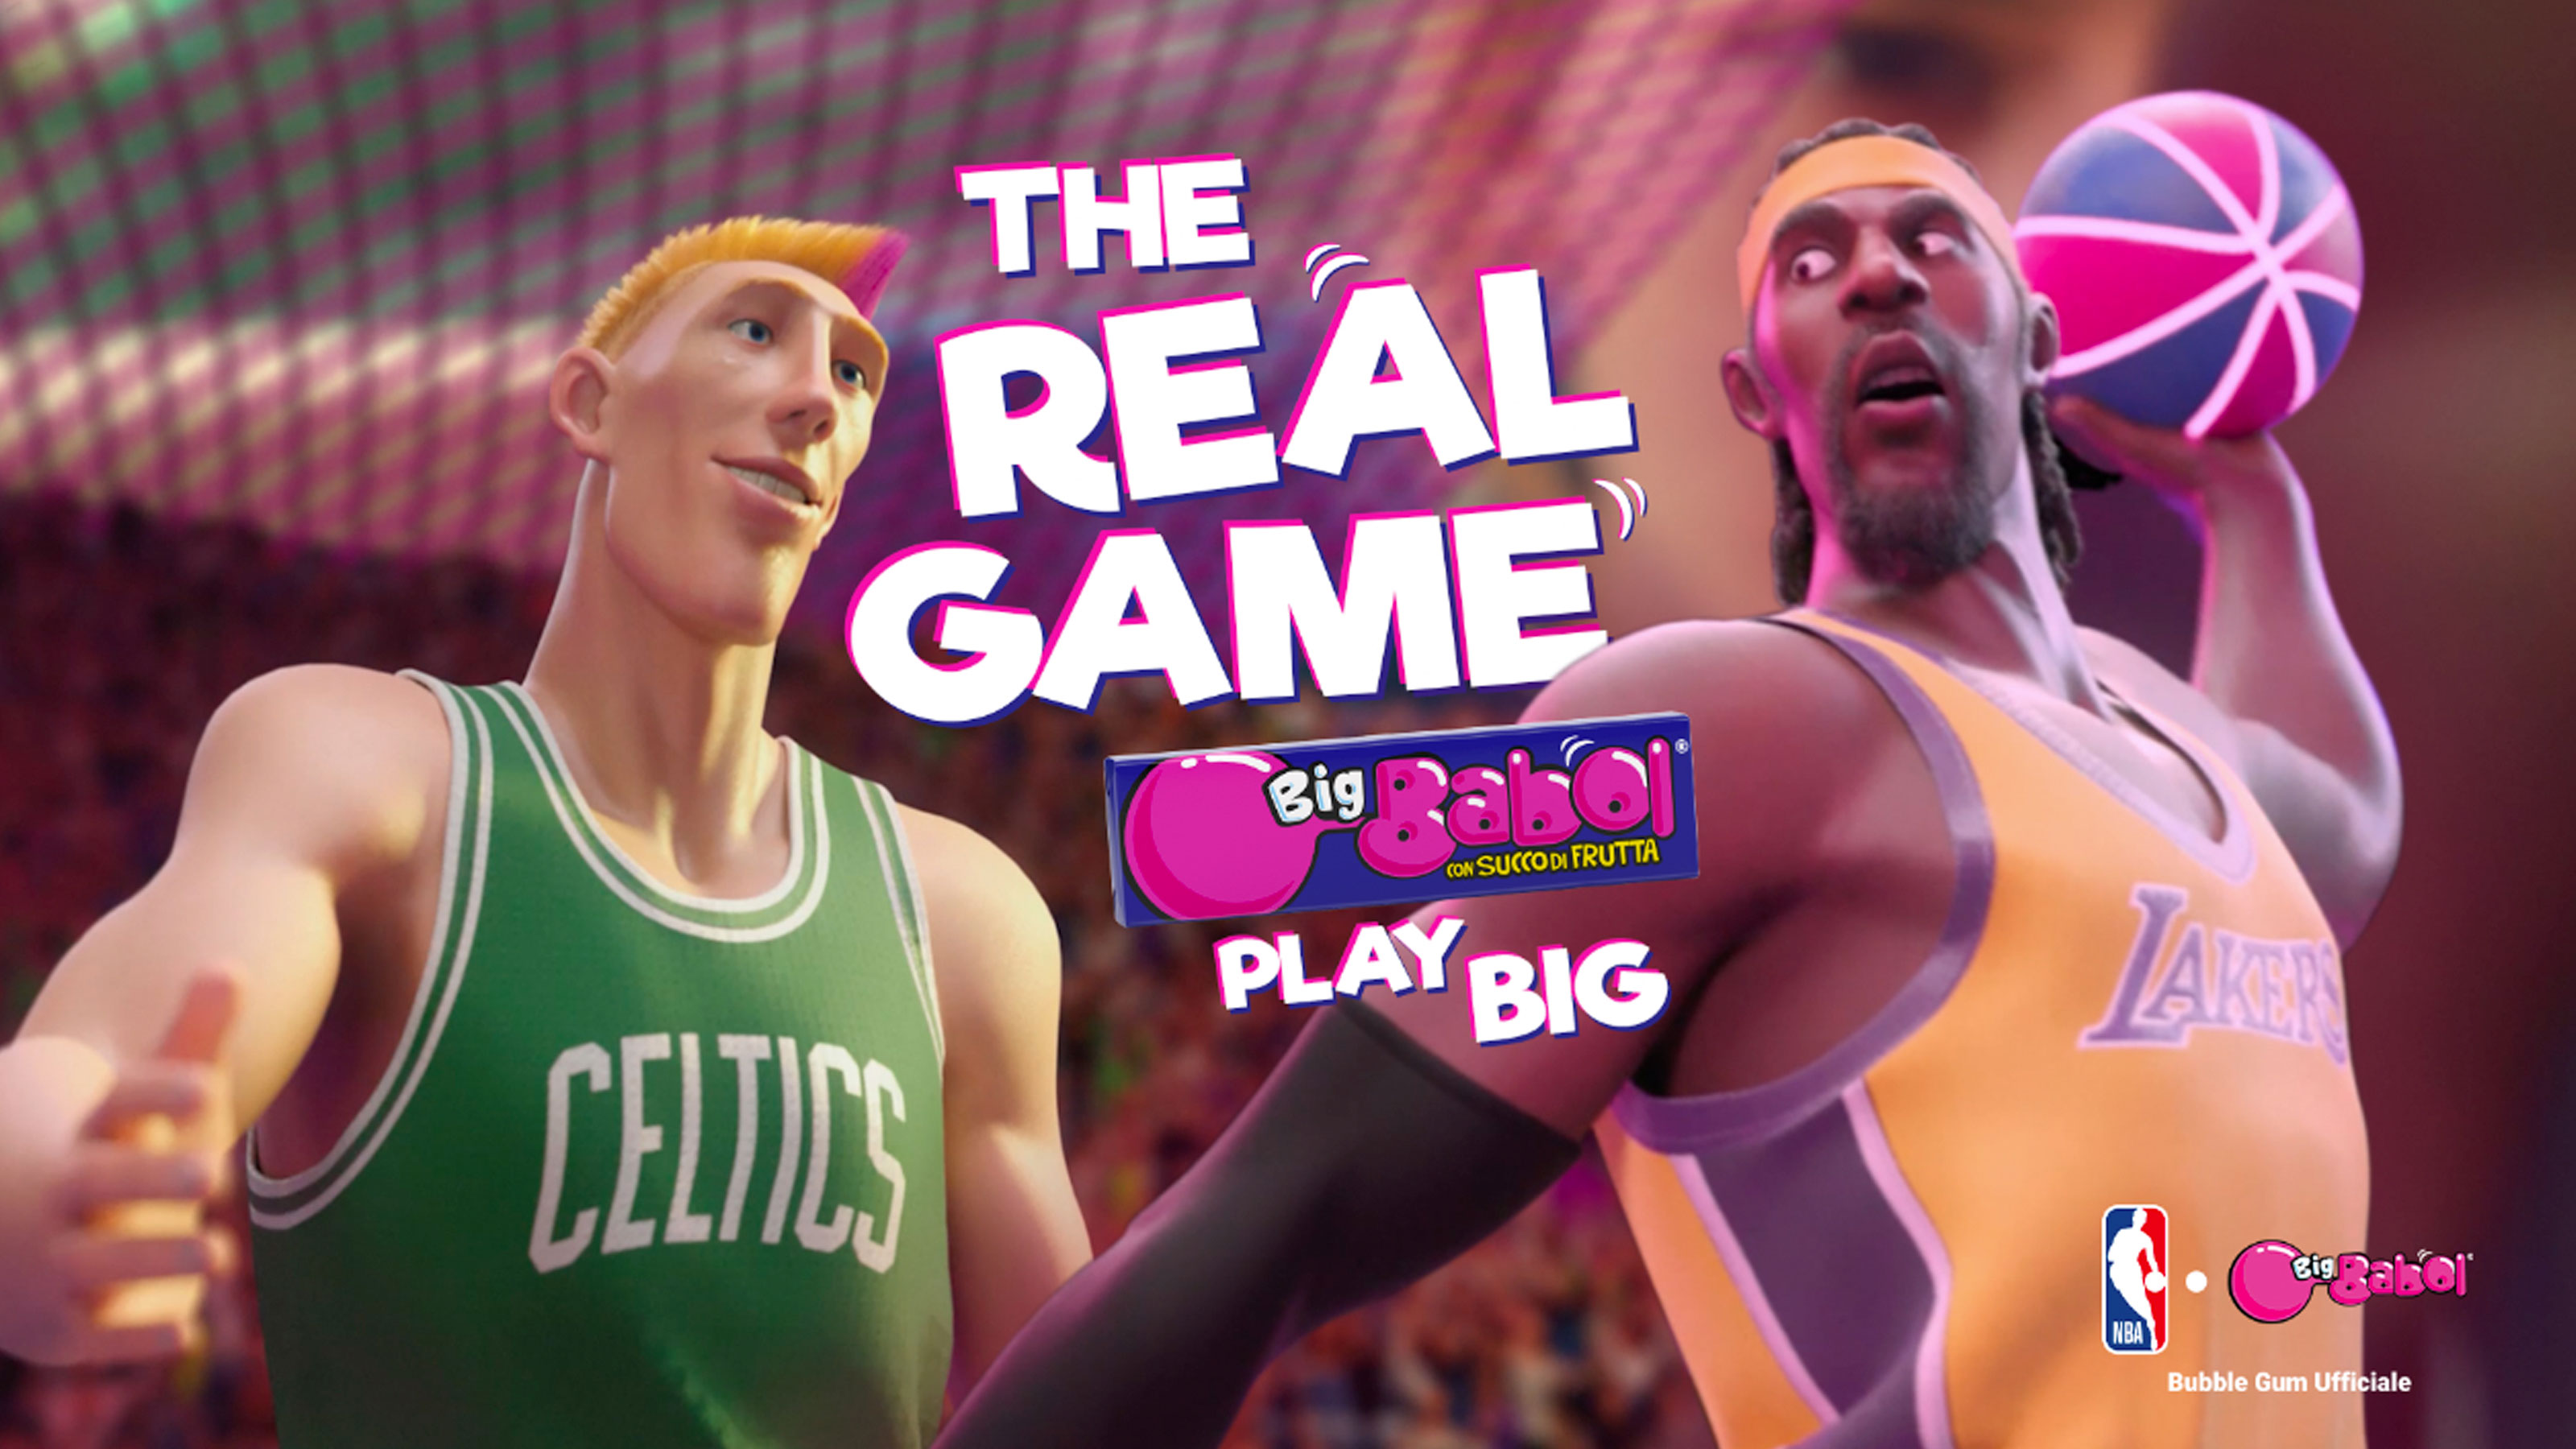 Big Babol - The Real Game